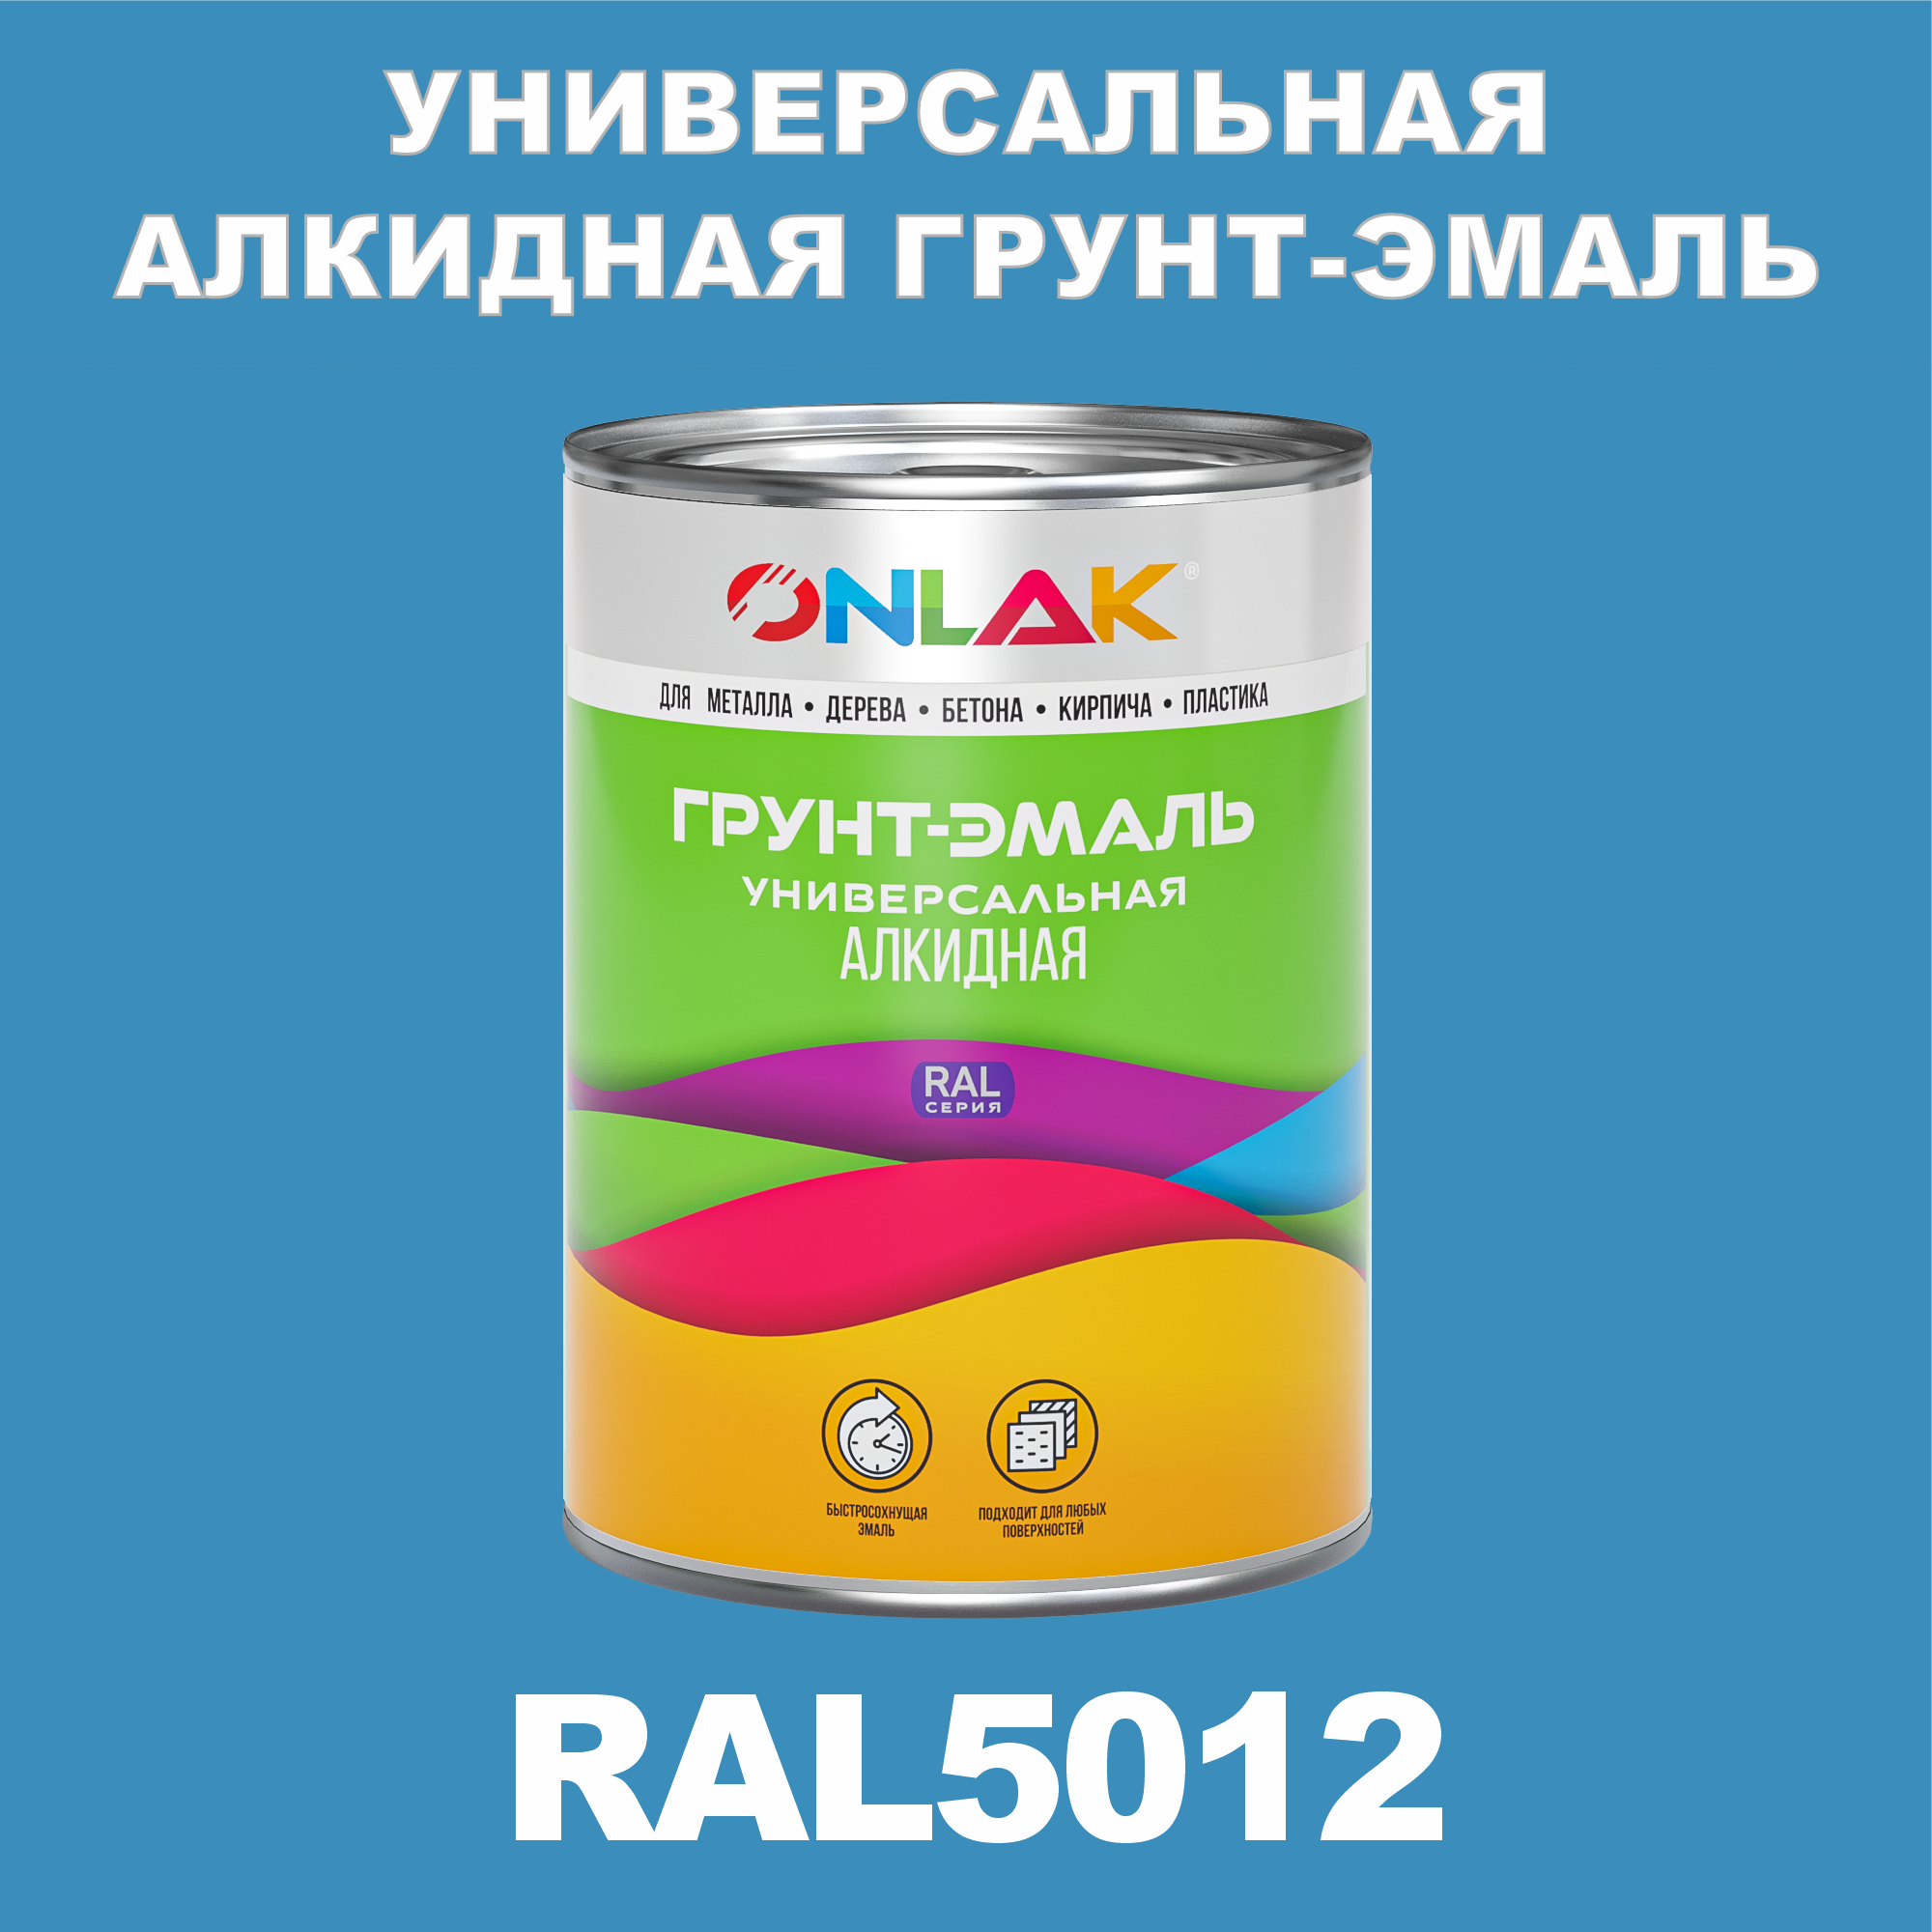 Грунт-эмаль ONLAK 1К RAL5012 антикоррозионная алкидная по металлу по ржавчине 1 кг грунт эмаль yollo по ржавчине алкидная синяя 0 9 кг